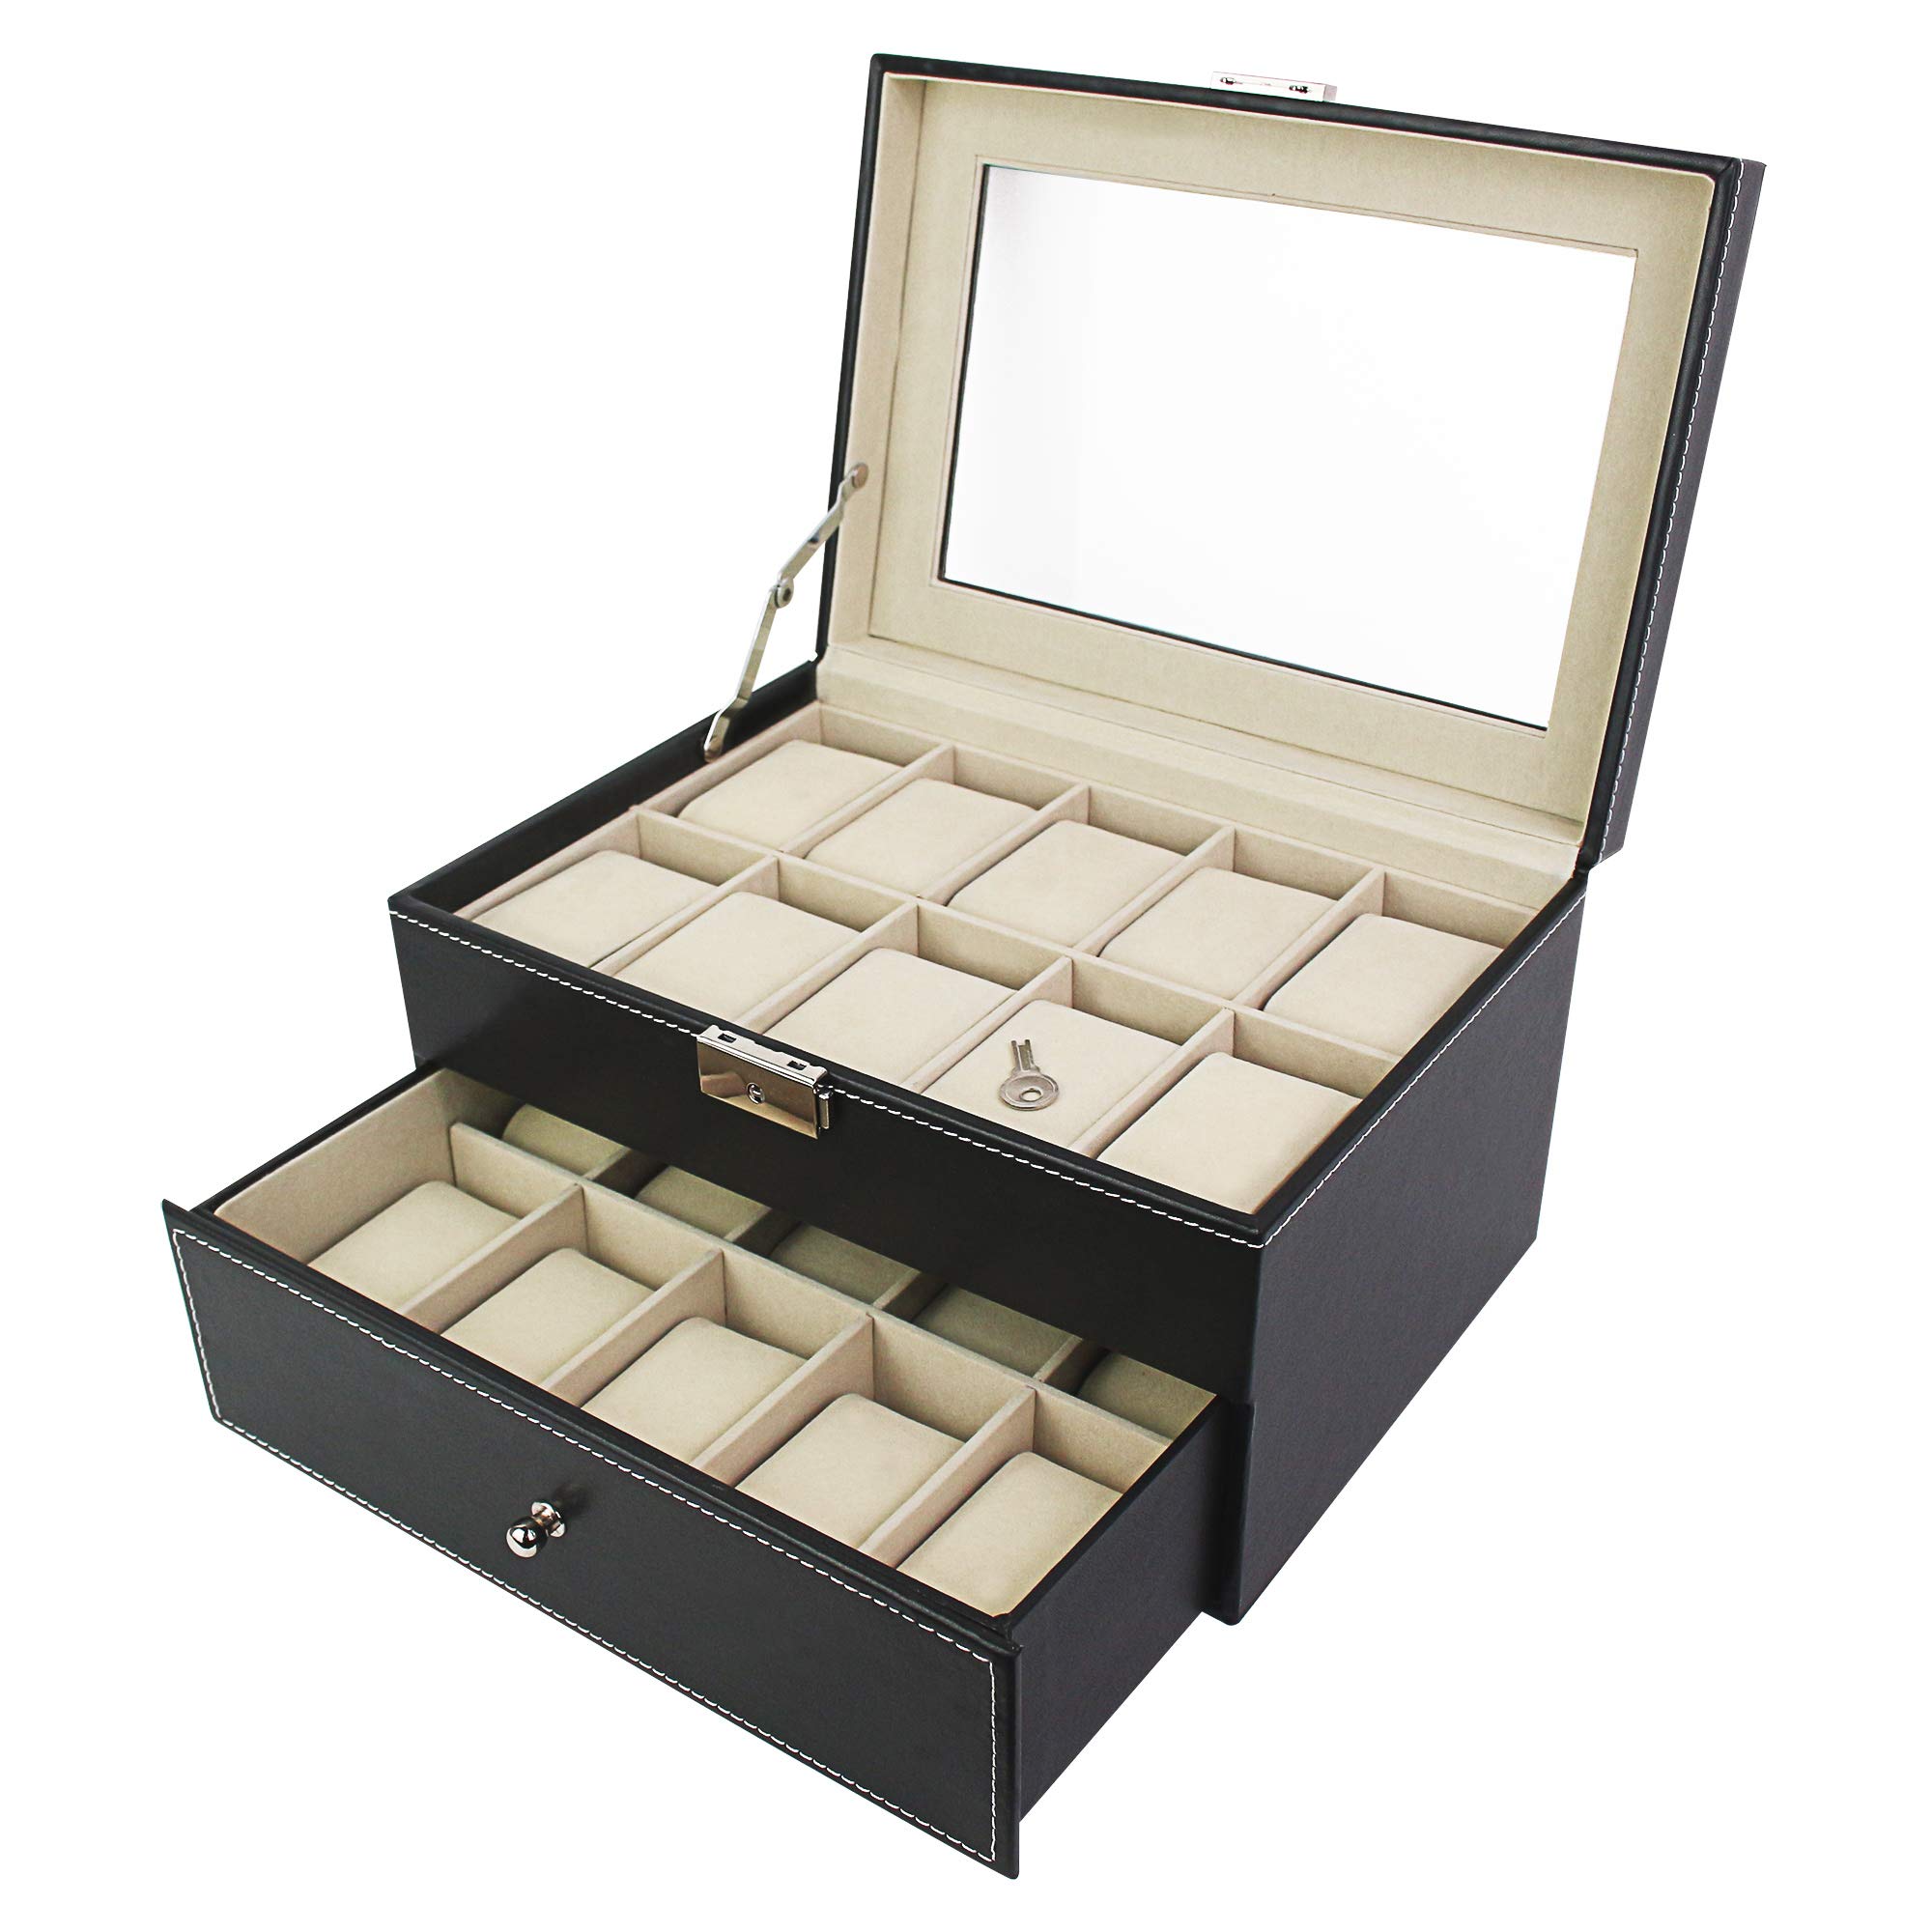 Todeco - Uhrbox, Uhr und Armband Aufbewahrung - Material der Box: MDF - Kissenmaterial: Samt - 20 Uhren mit Schublade und Display, Schwarz/Beige